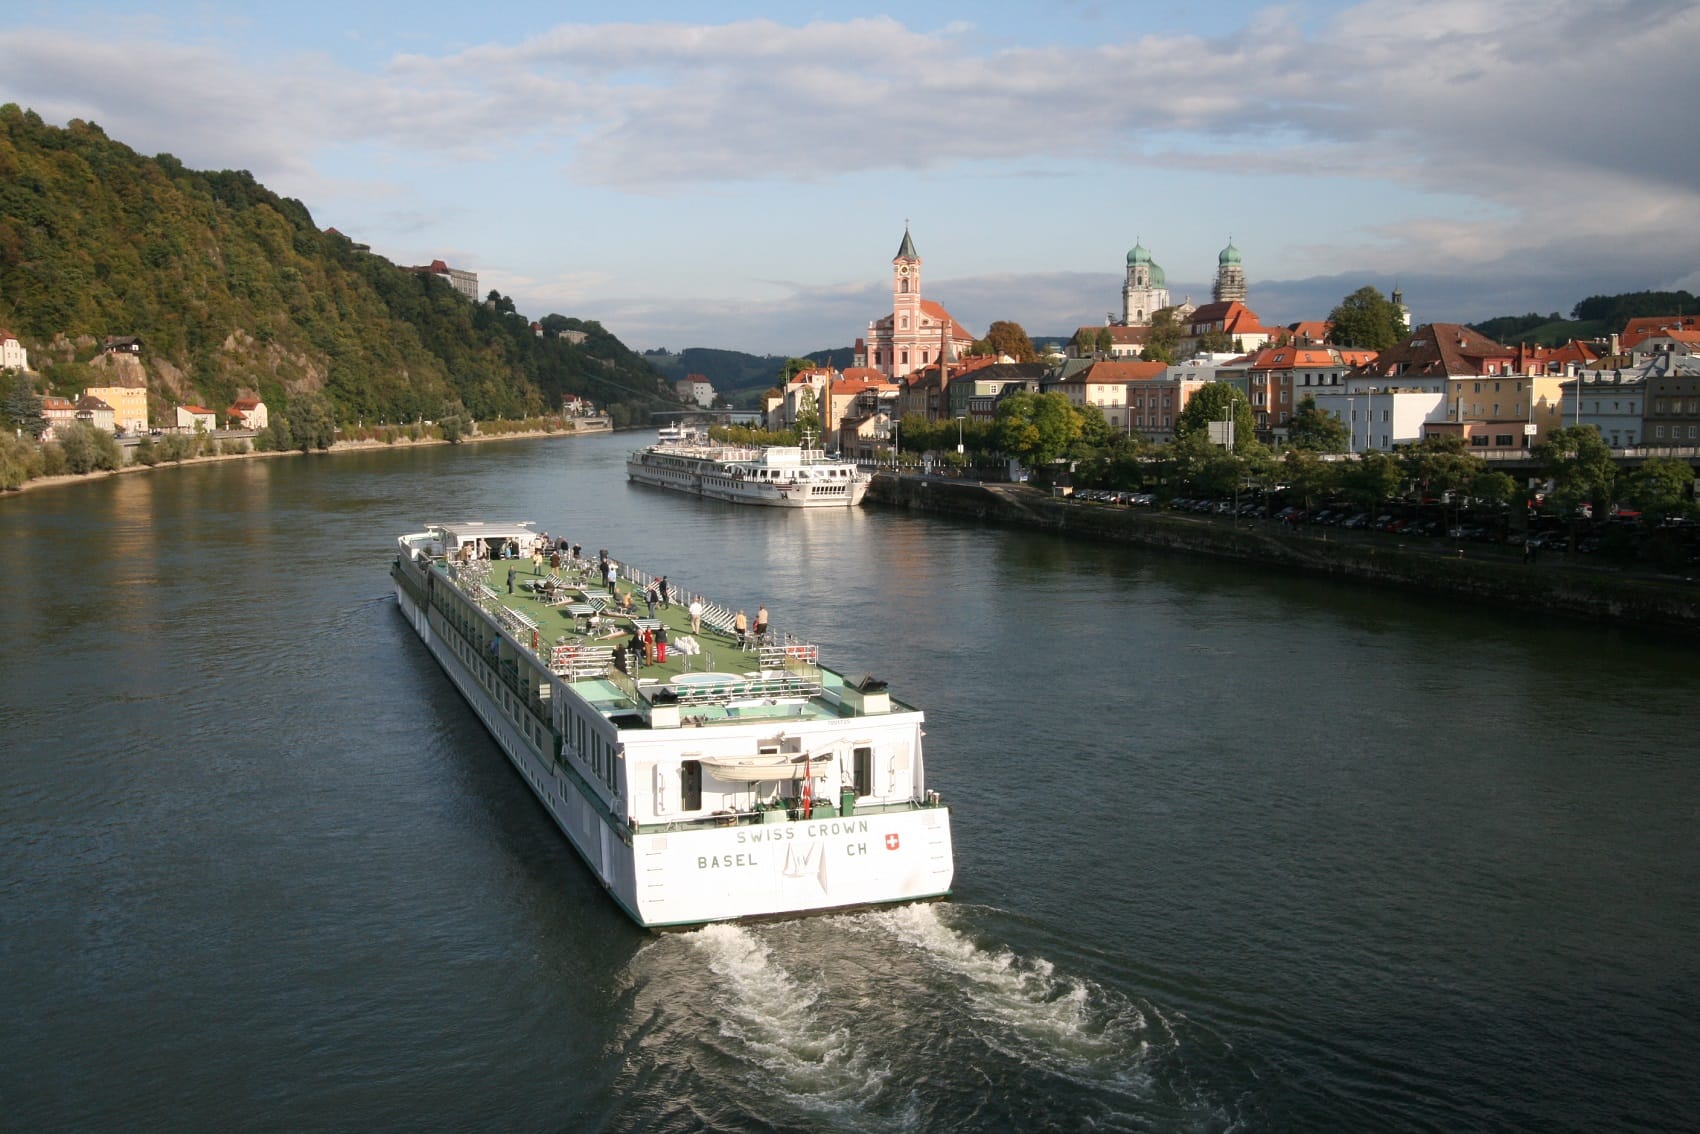 Boat over Danube